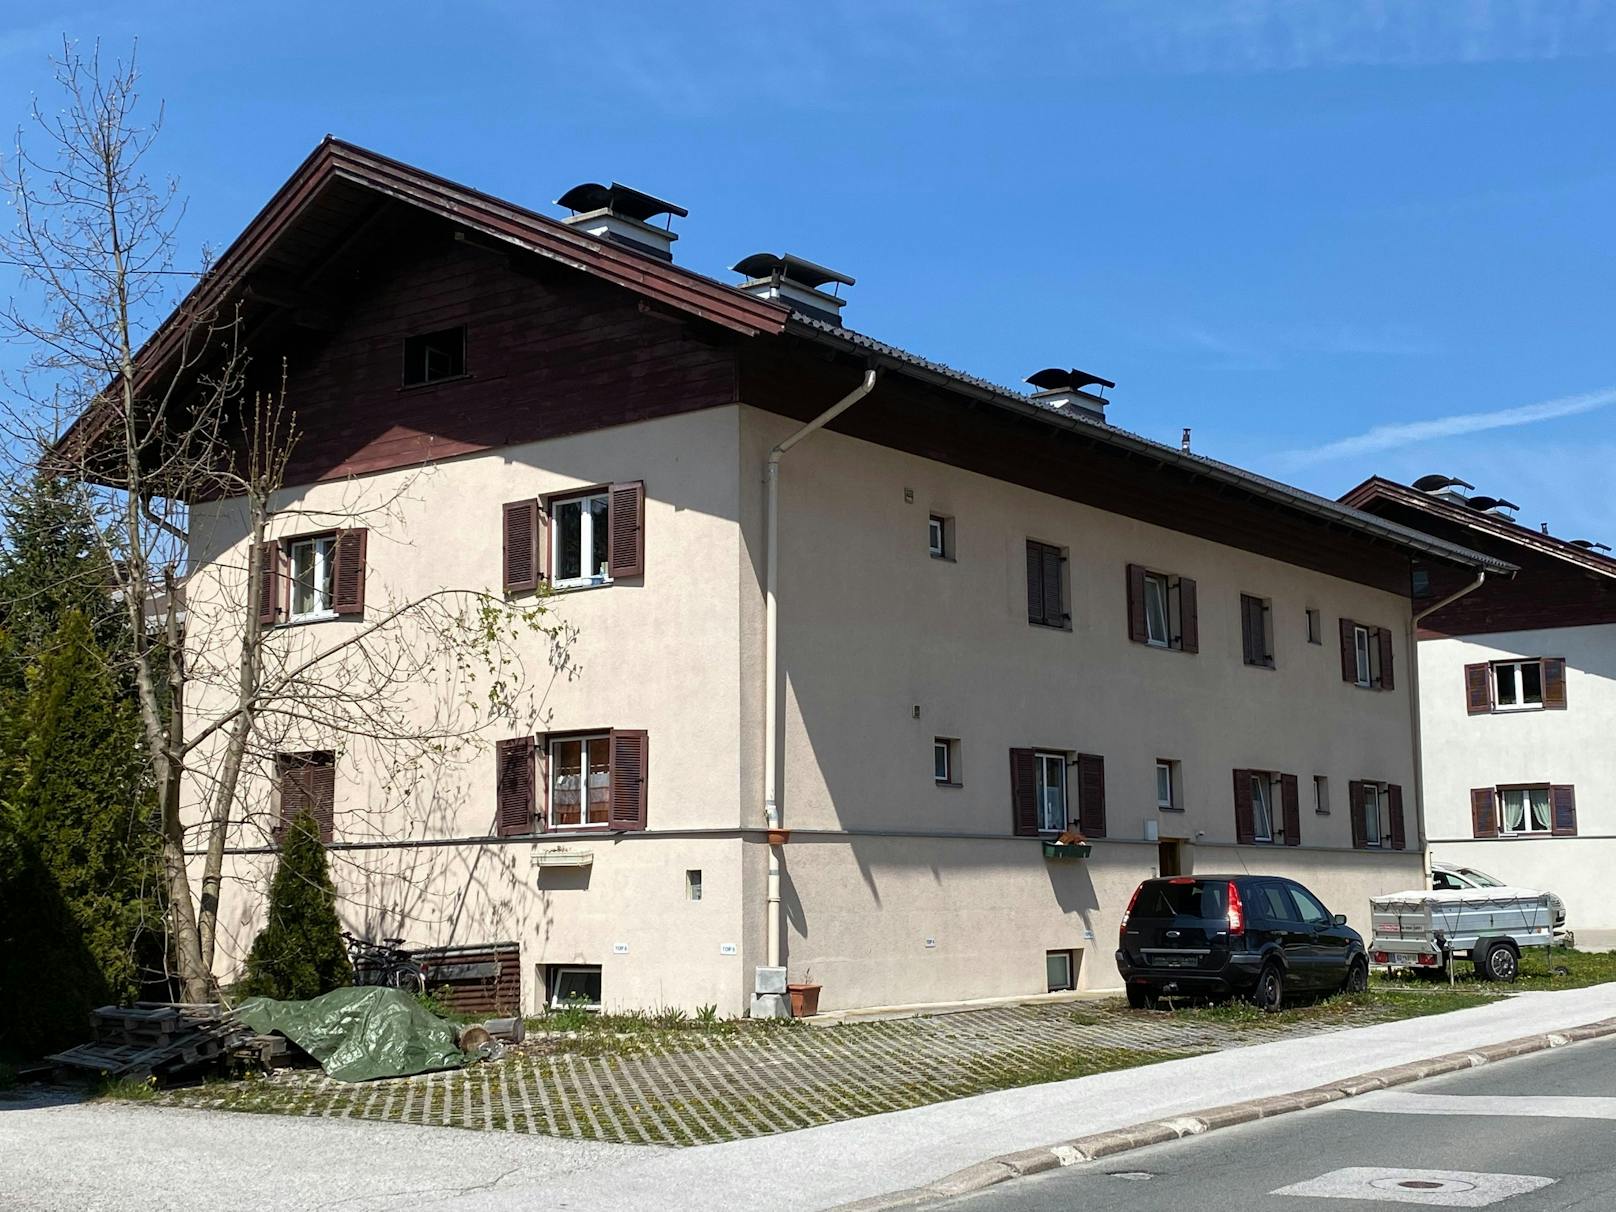 In einer Wohnung in Kufstein wurde eine weibliche Leiche entdeckt.